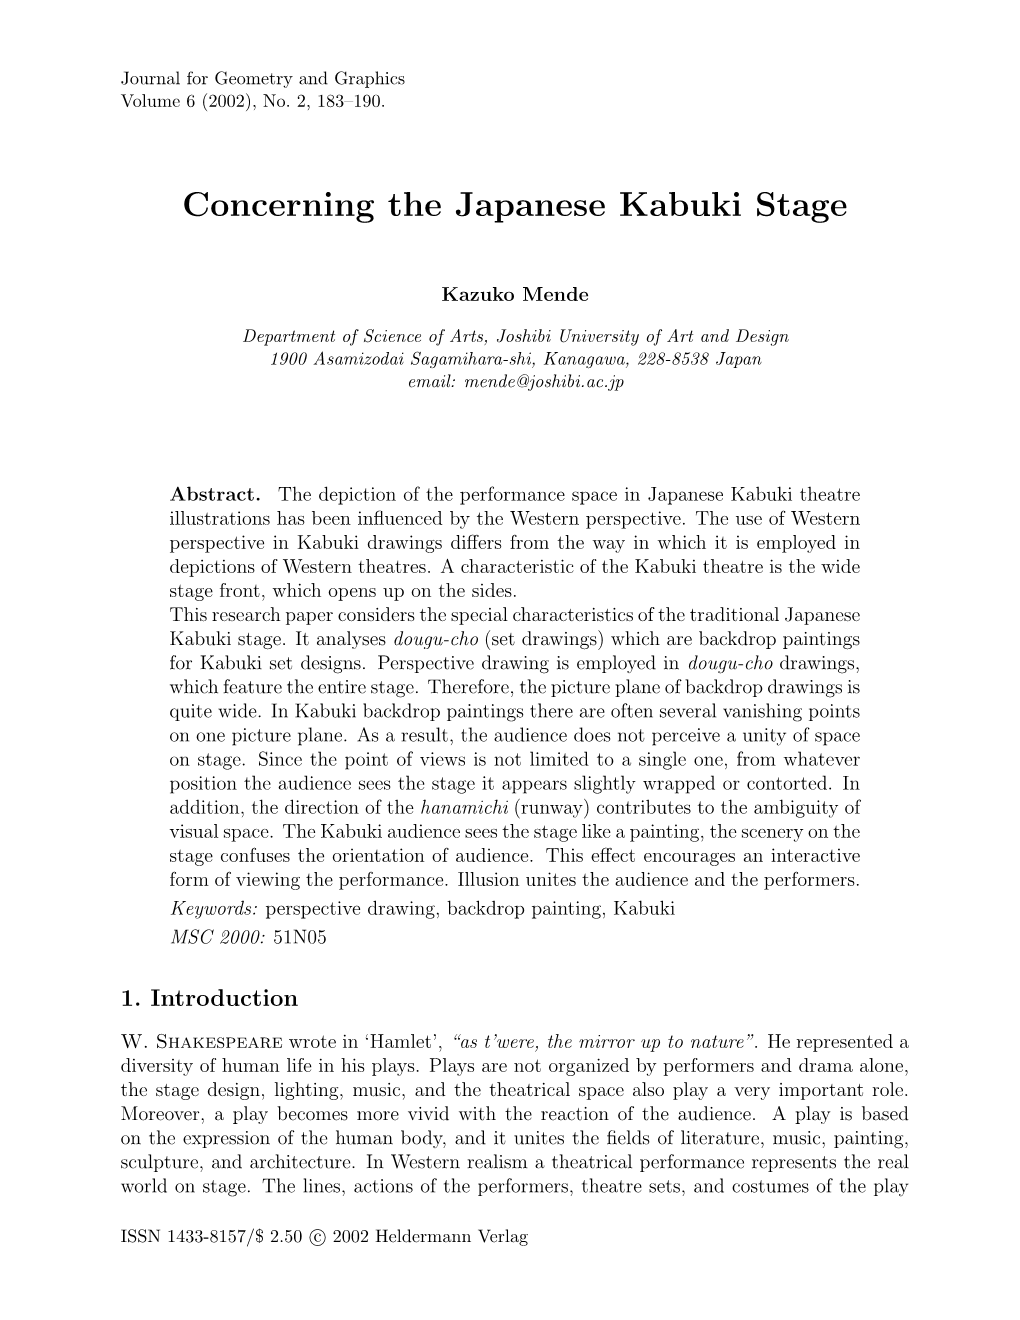 Concerning the Japanese Kabuki Stage